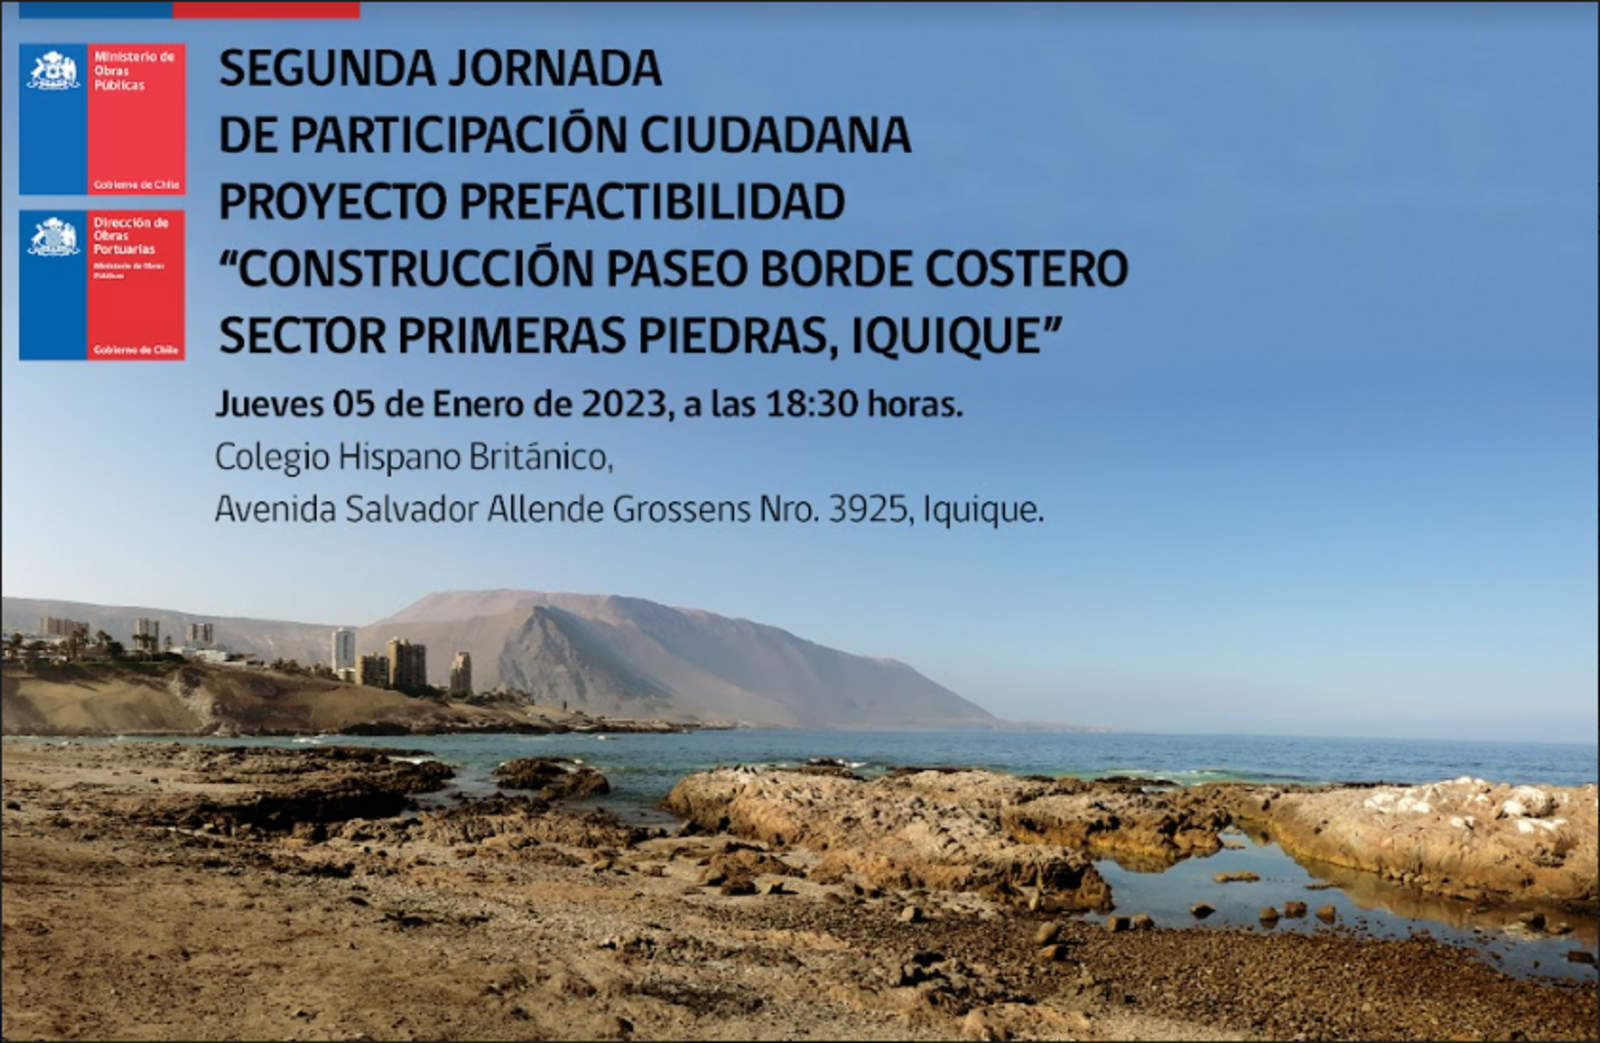 Este 5 de enero se realizará la segunda jornada de participación ciudadana para la construcción del borde costero de Primeras Piedras en Iquique